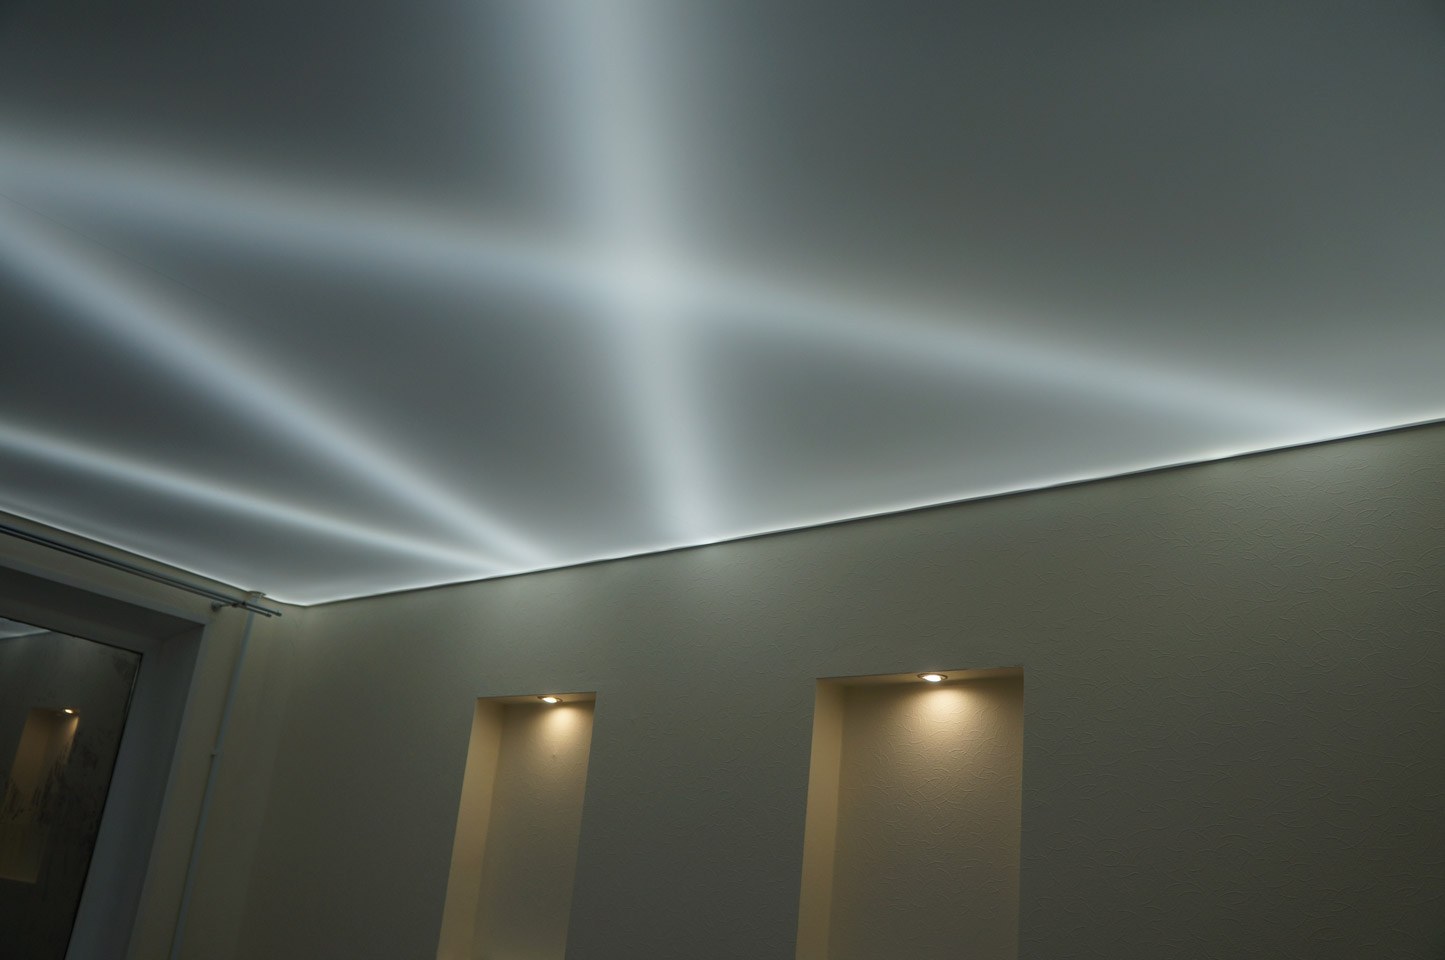 Подсветка внутри потолка. Потолок с подсветкой. Натяжные потолки с подсветкой. Натяжной потолок со светодиодной подсветкой. Светопрозрачный натяжной потолок.